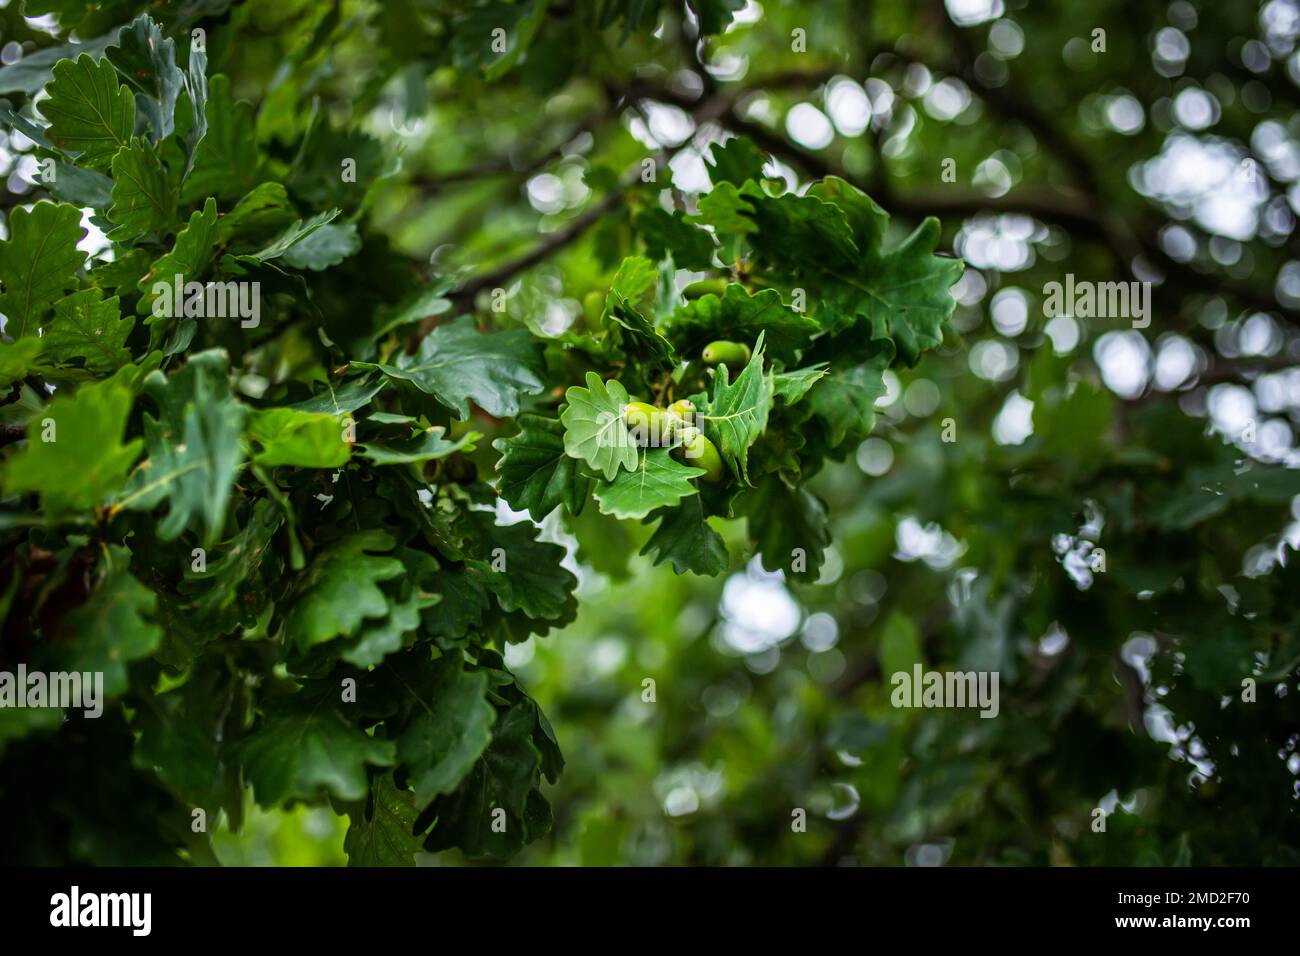 Giovani ghiande verdi su un albero quercia. Frutta di quercia con foglie fresche nel parco. Foto Stock